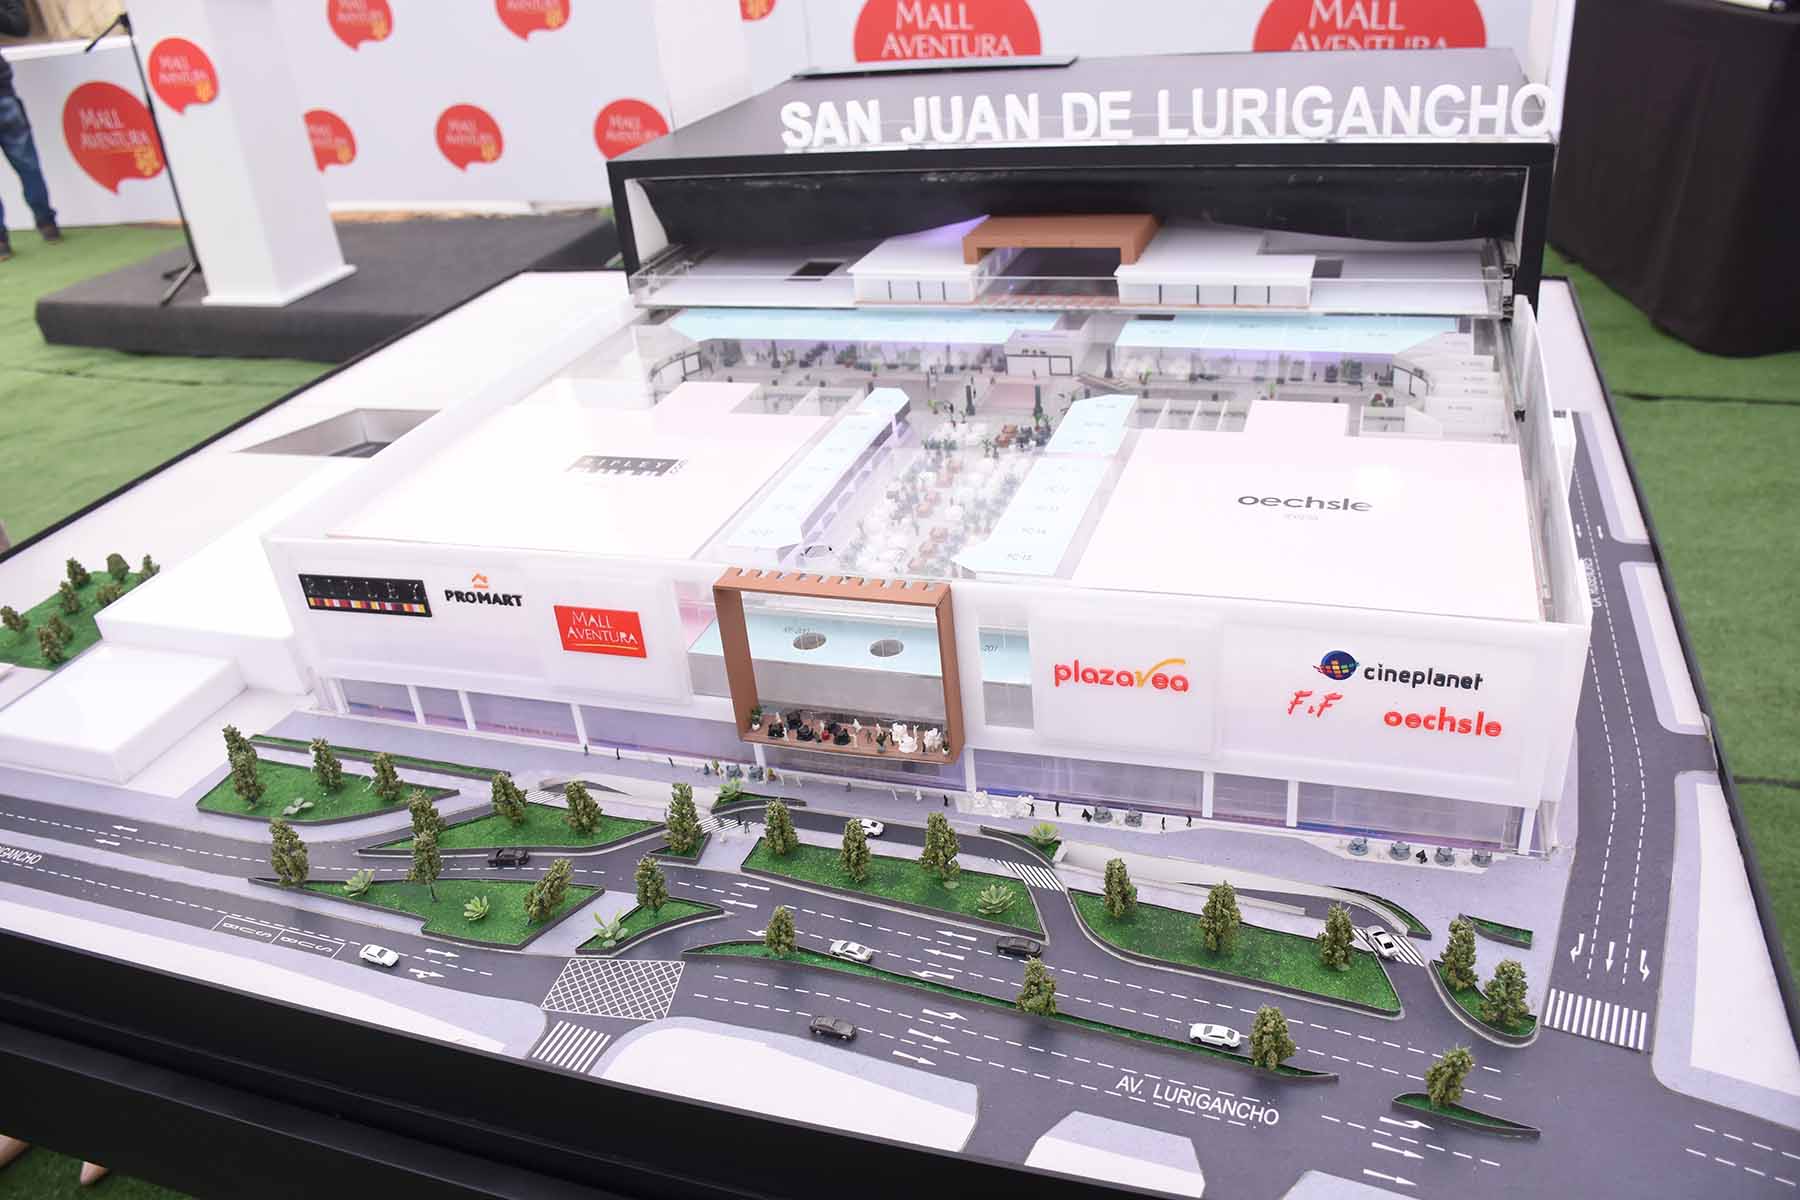 Mall Aventura coloca primera piedra de su próximo proyecto en San Juan de Lurigancho